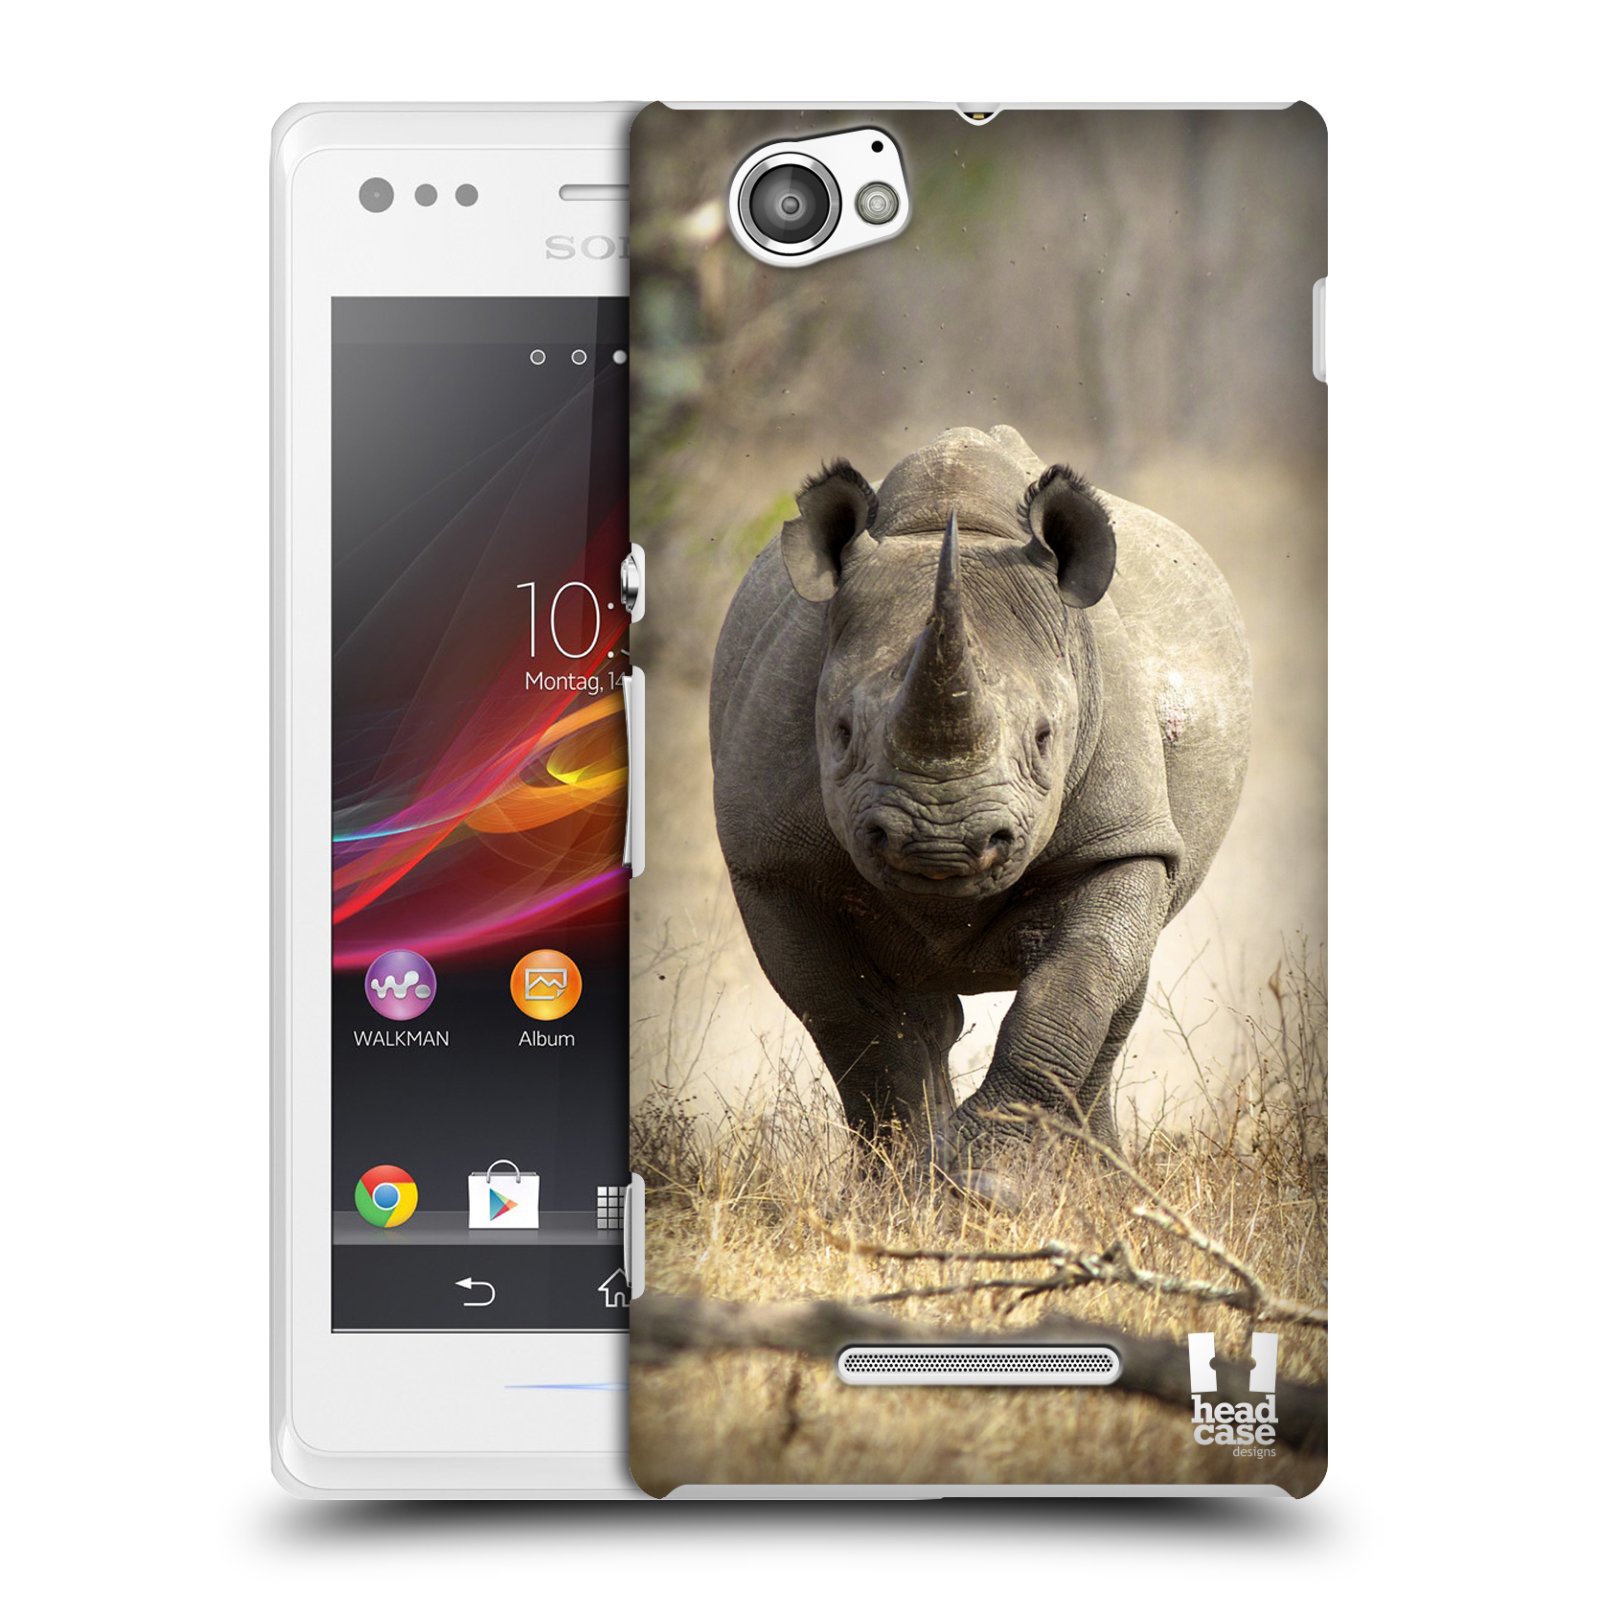 HEAD CASE plastový obal na mobil Sony Xperia M vzor Divočina, Divoký život a zvířata foto AFRIKA BĚŽÍCÍ NOSOROŽEC